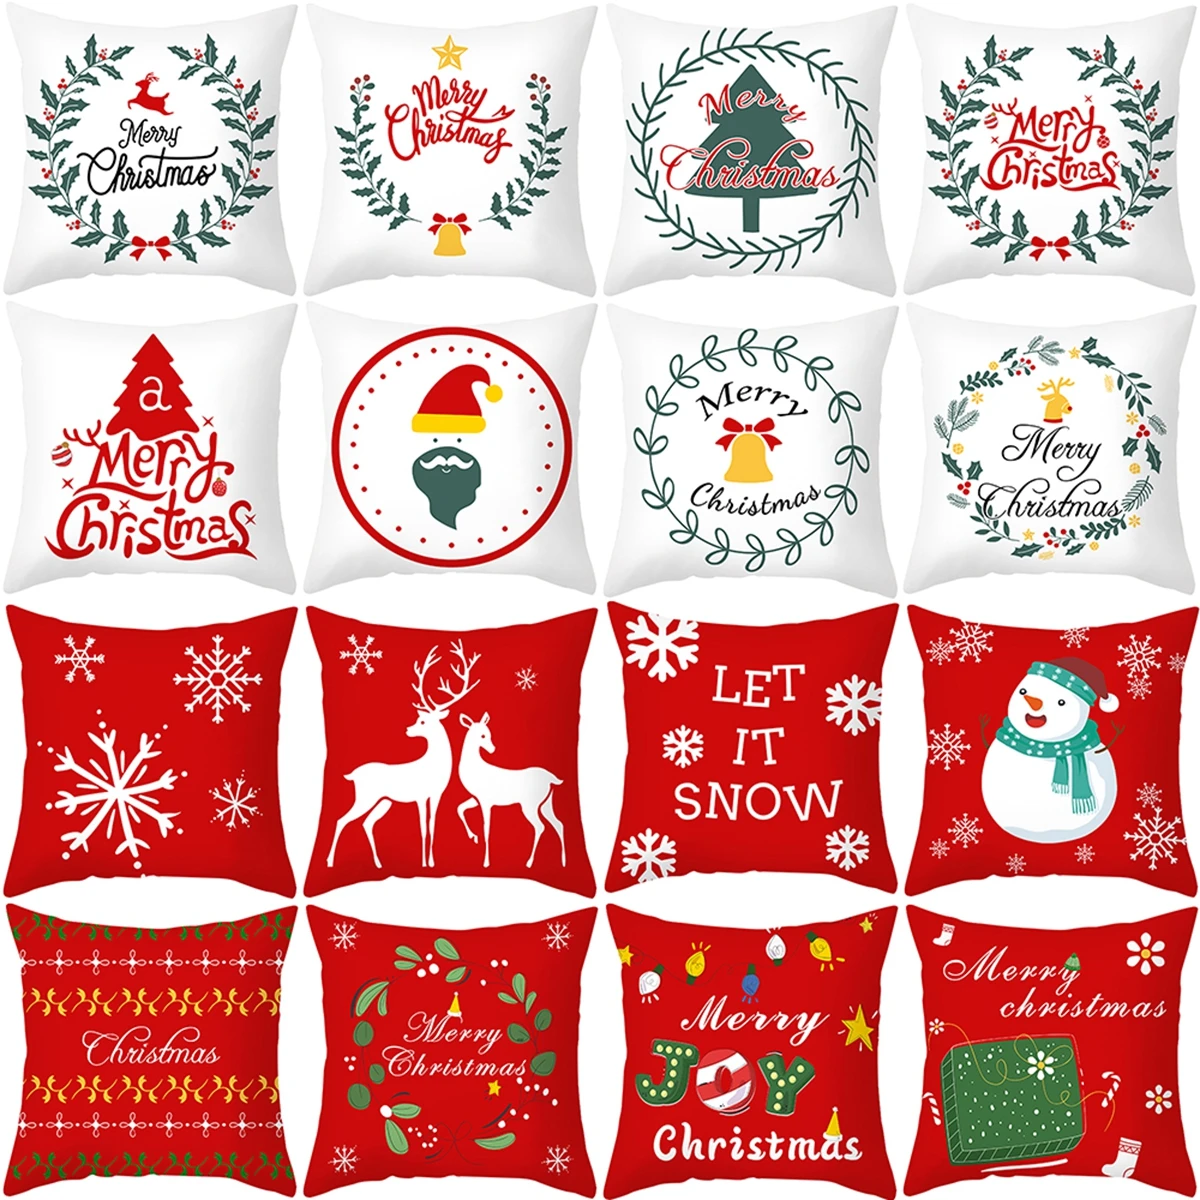 

Home Decor Santa Claus Christmas Pillowcase Christmas Gift Ornament New Year Pillowcase 45x45cm funda de almohada